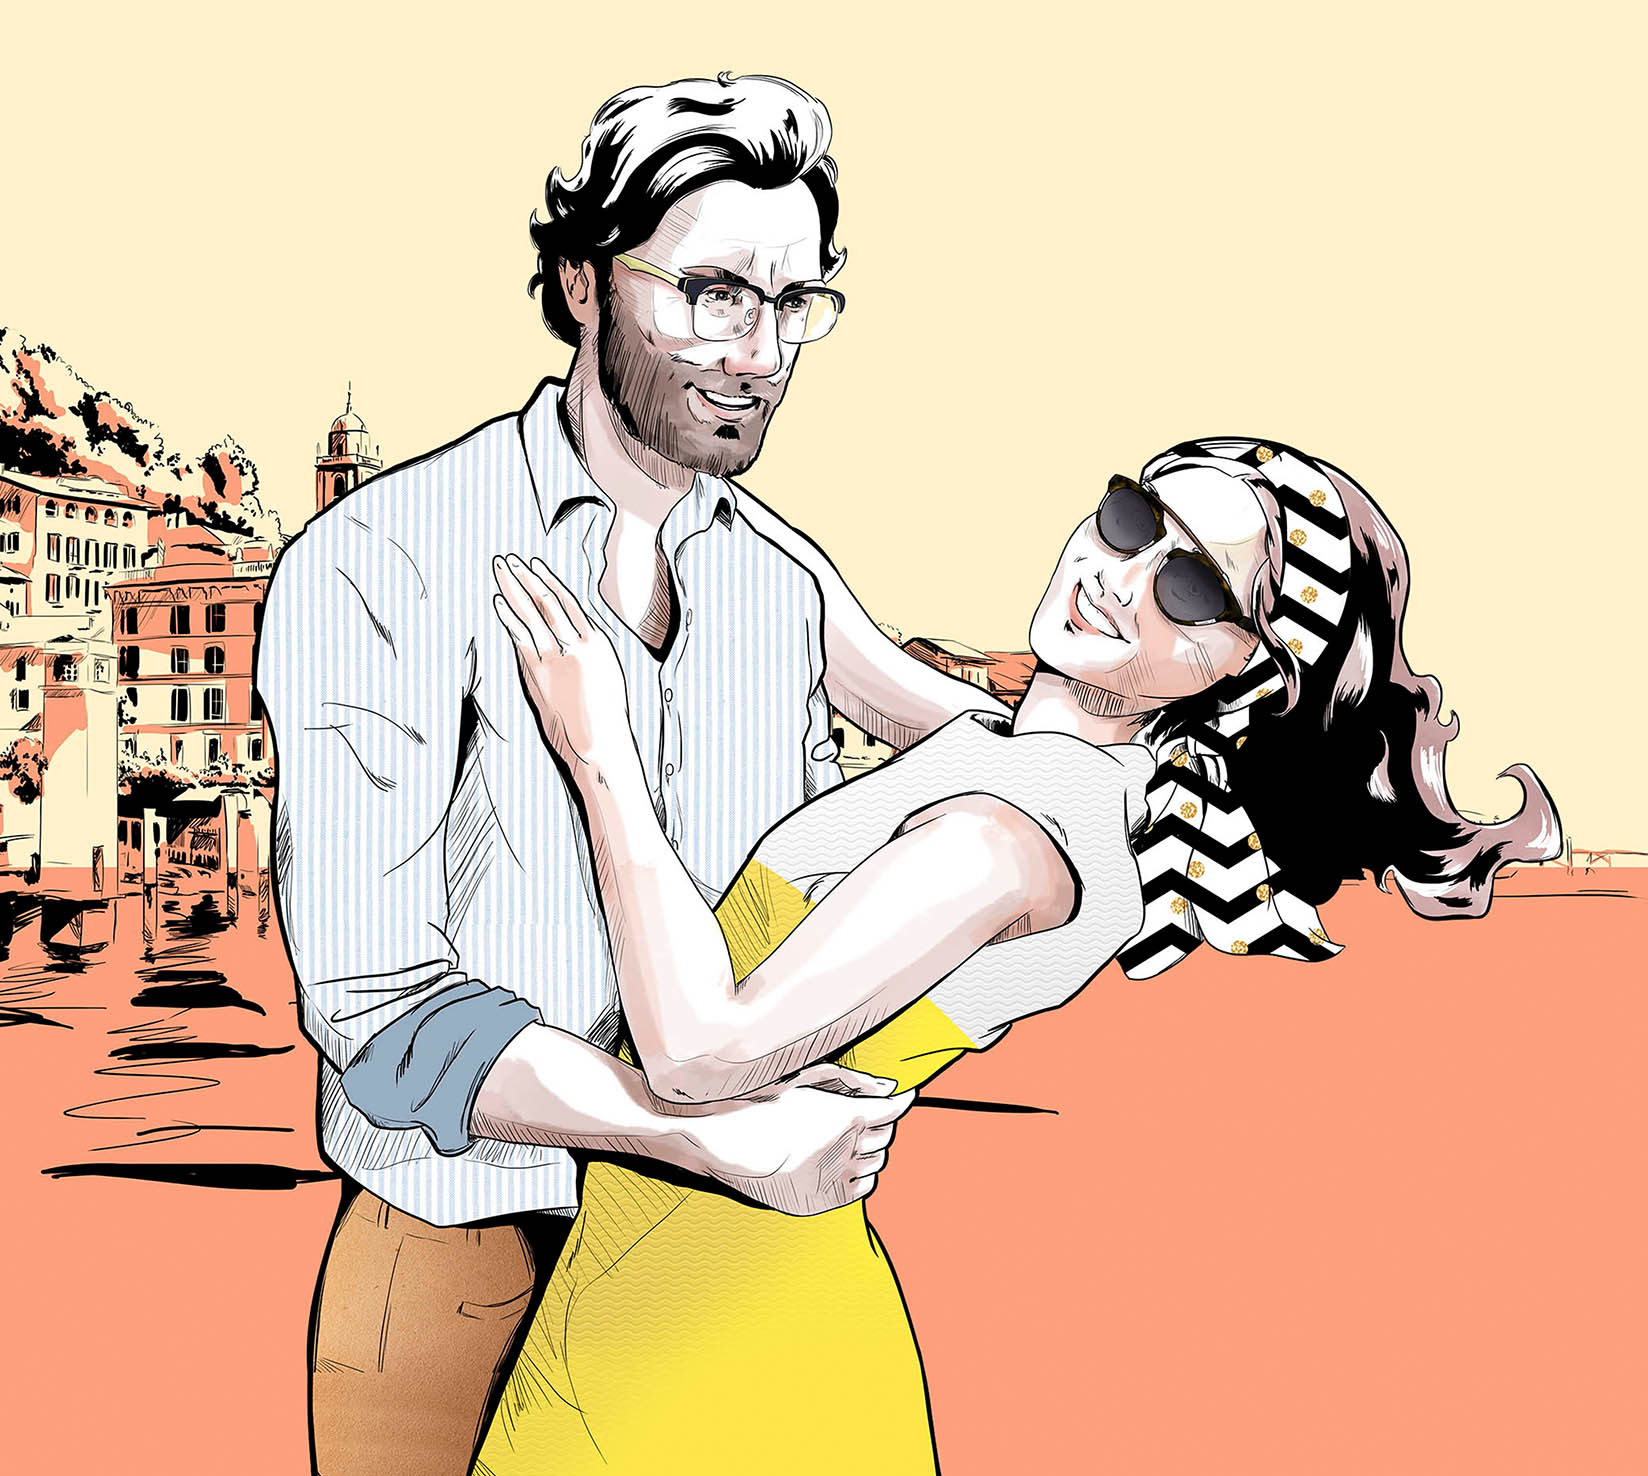 ilustracion en photoshop de una pareja en Italia para publicitar las gafas de Optica 2000, la optica de El Corte Ingles